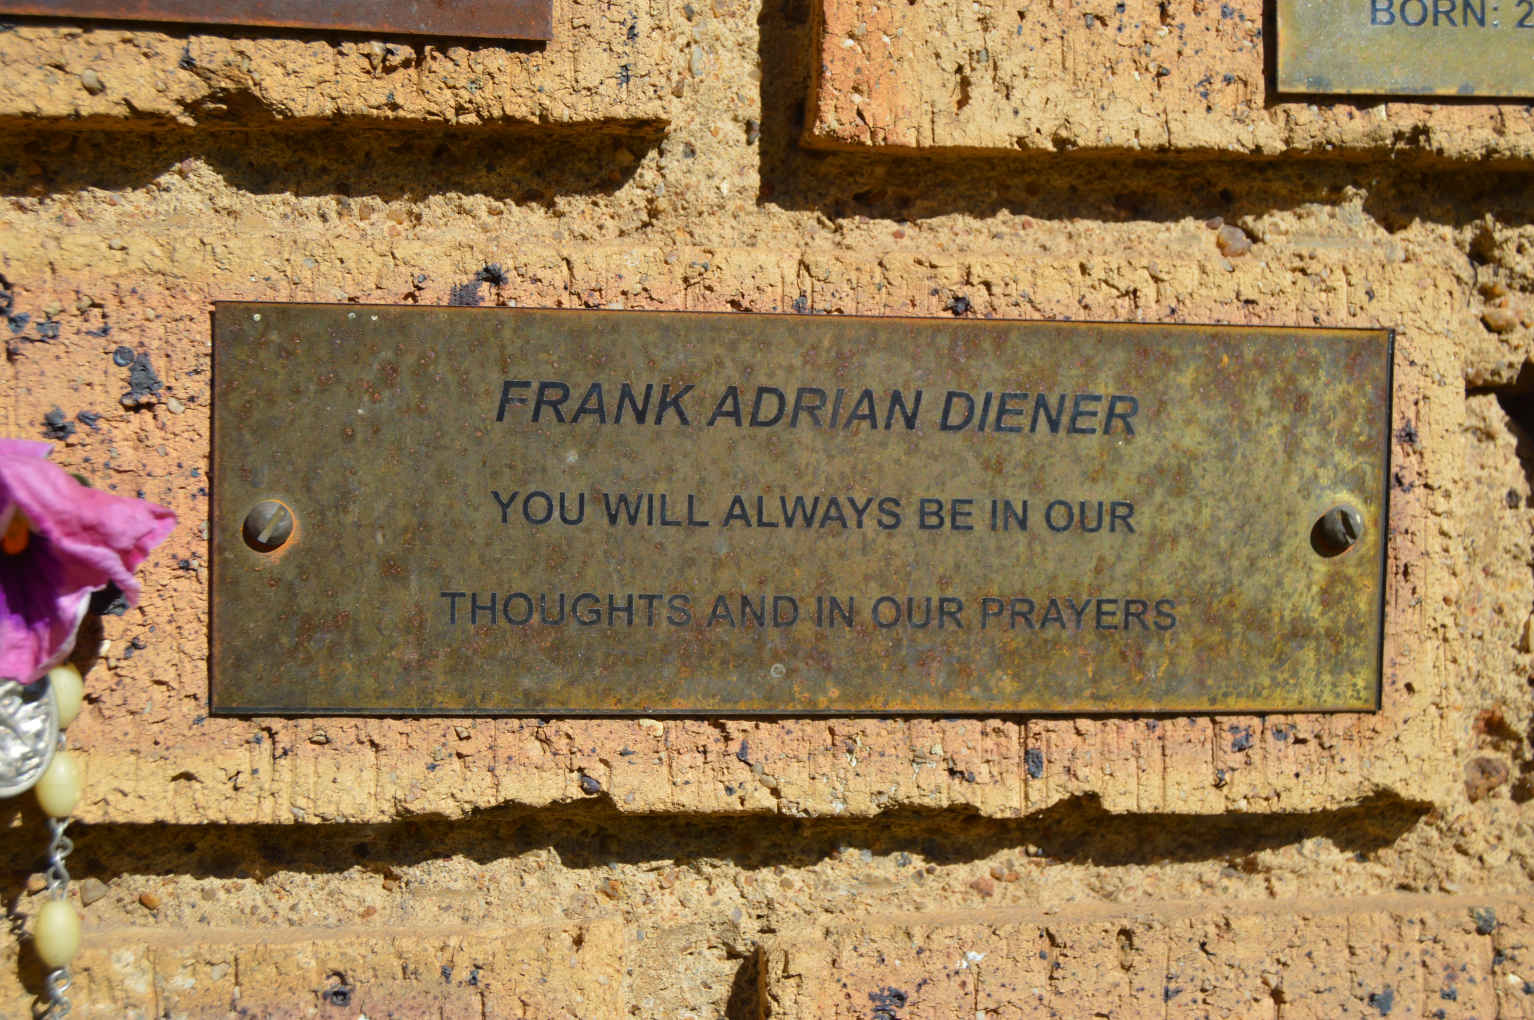 DIENER Frank Adrian